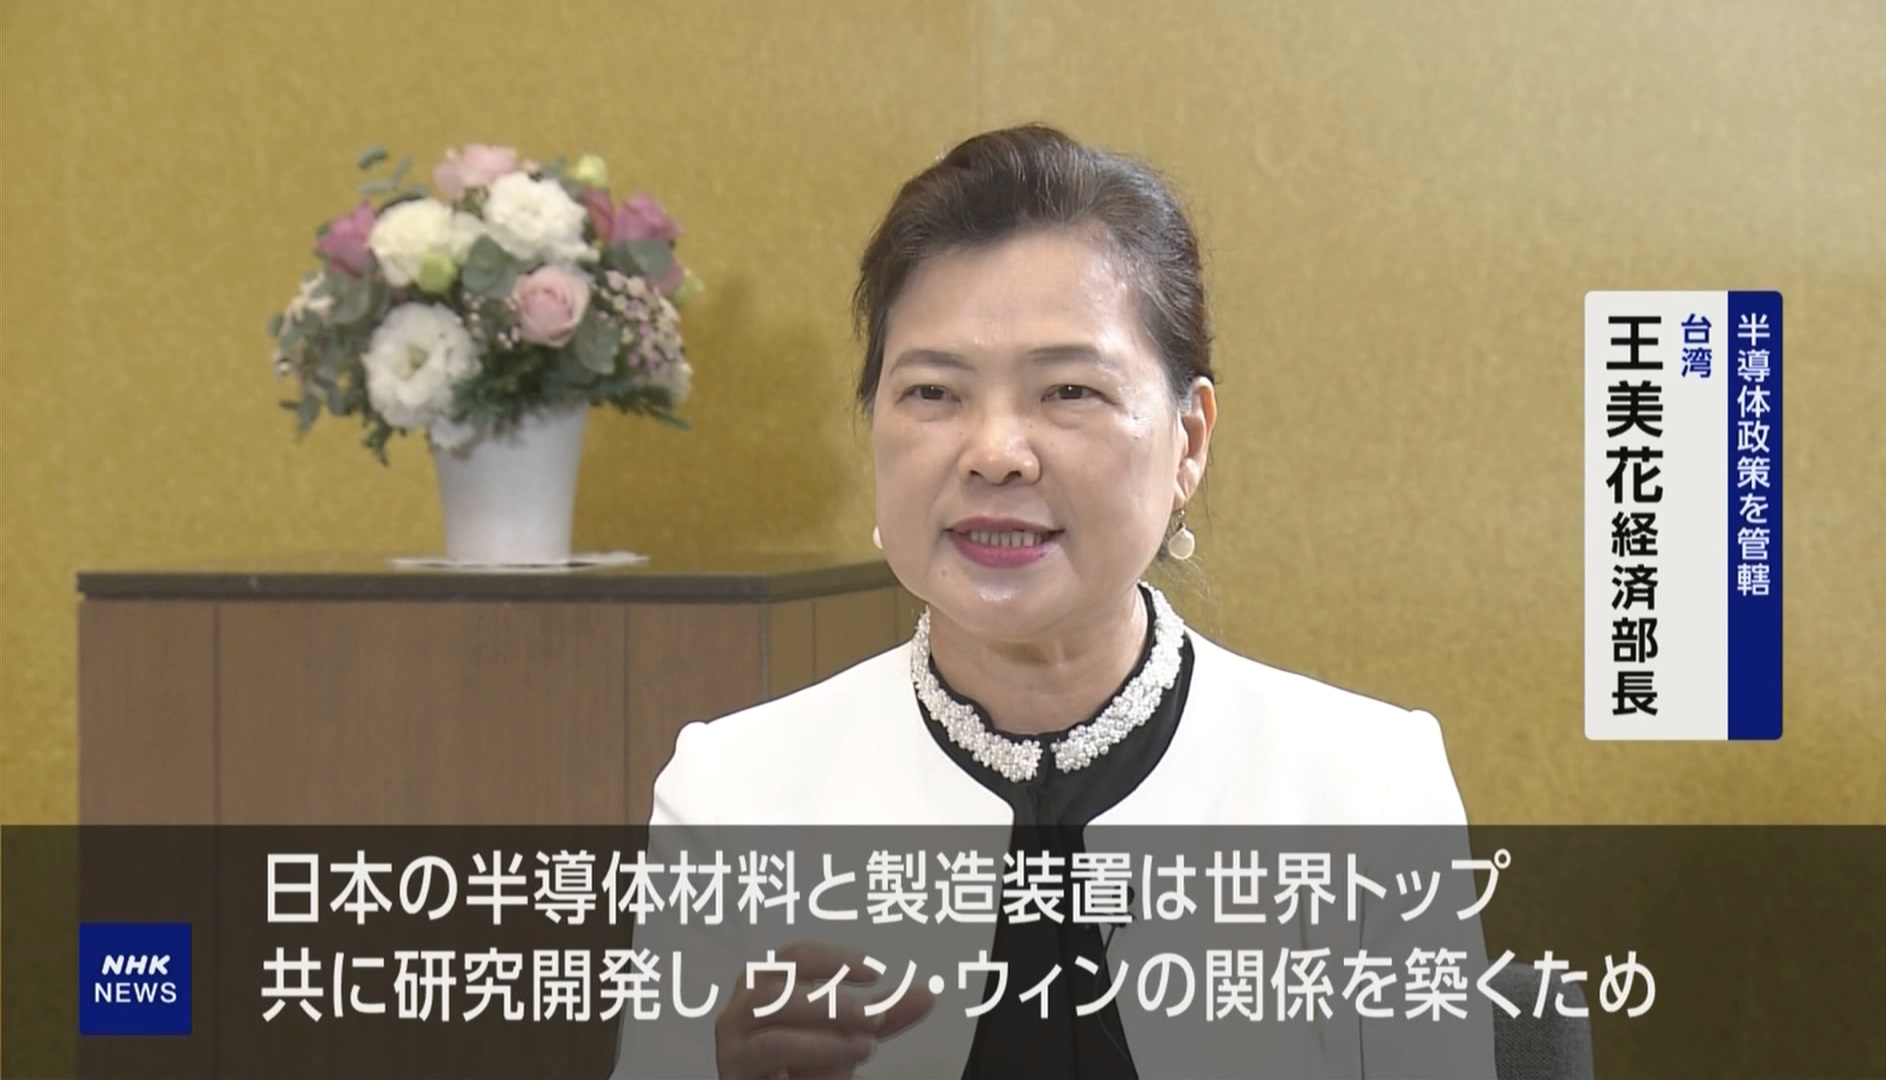 왕메이화 타이완 경제부장관 NHK 인터뷰